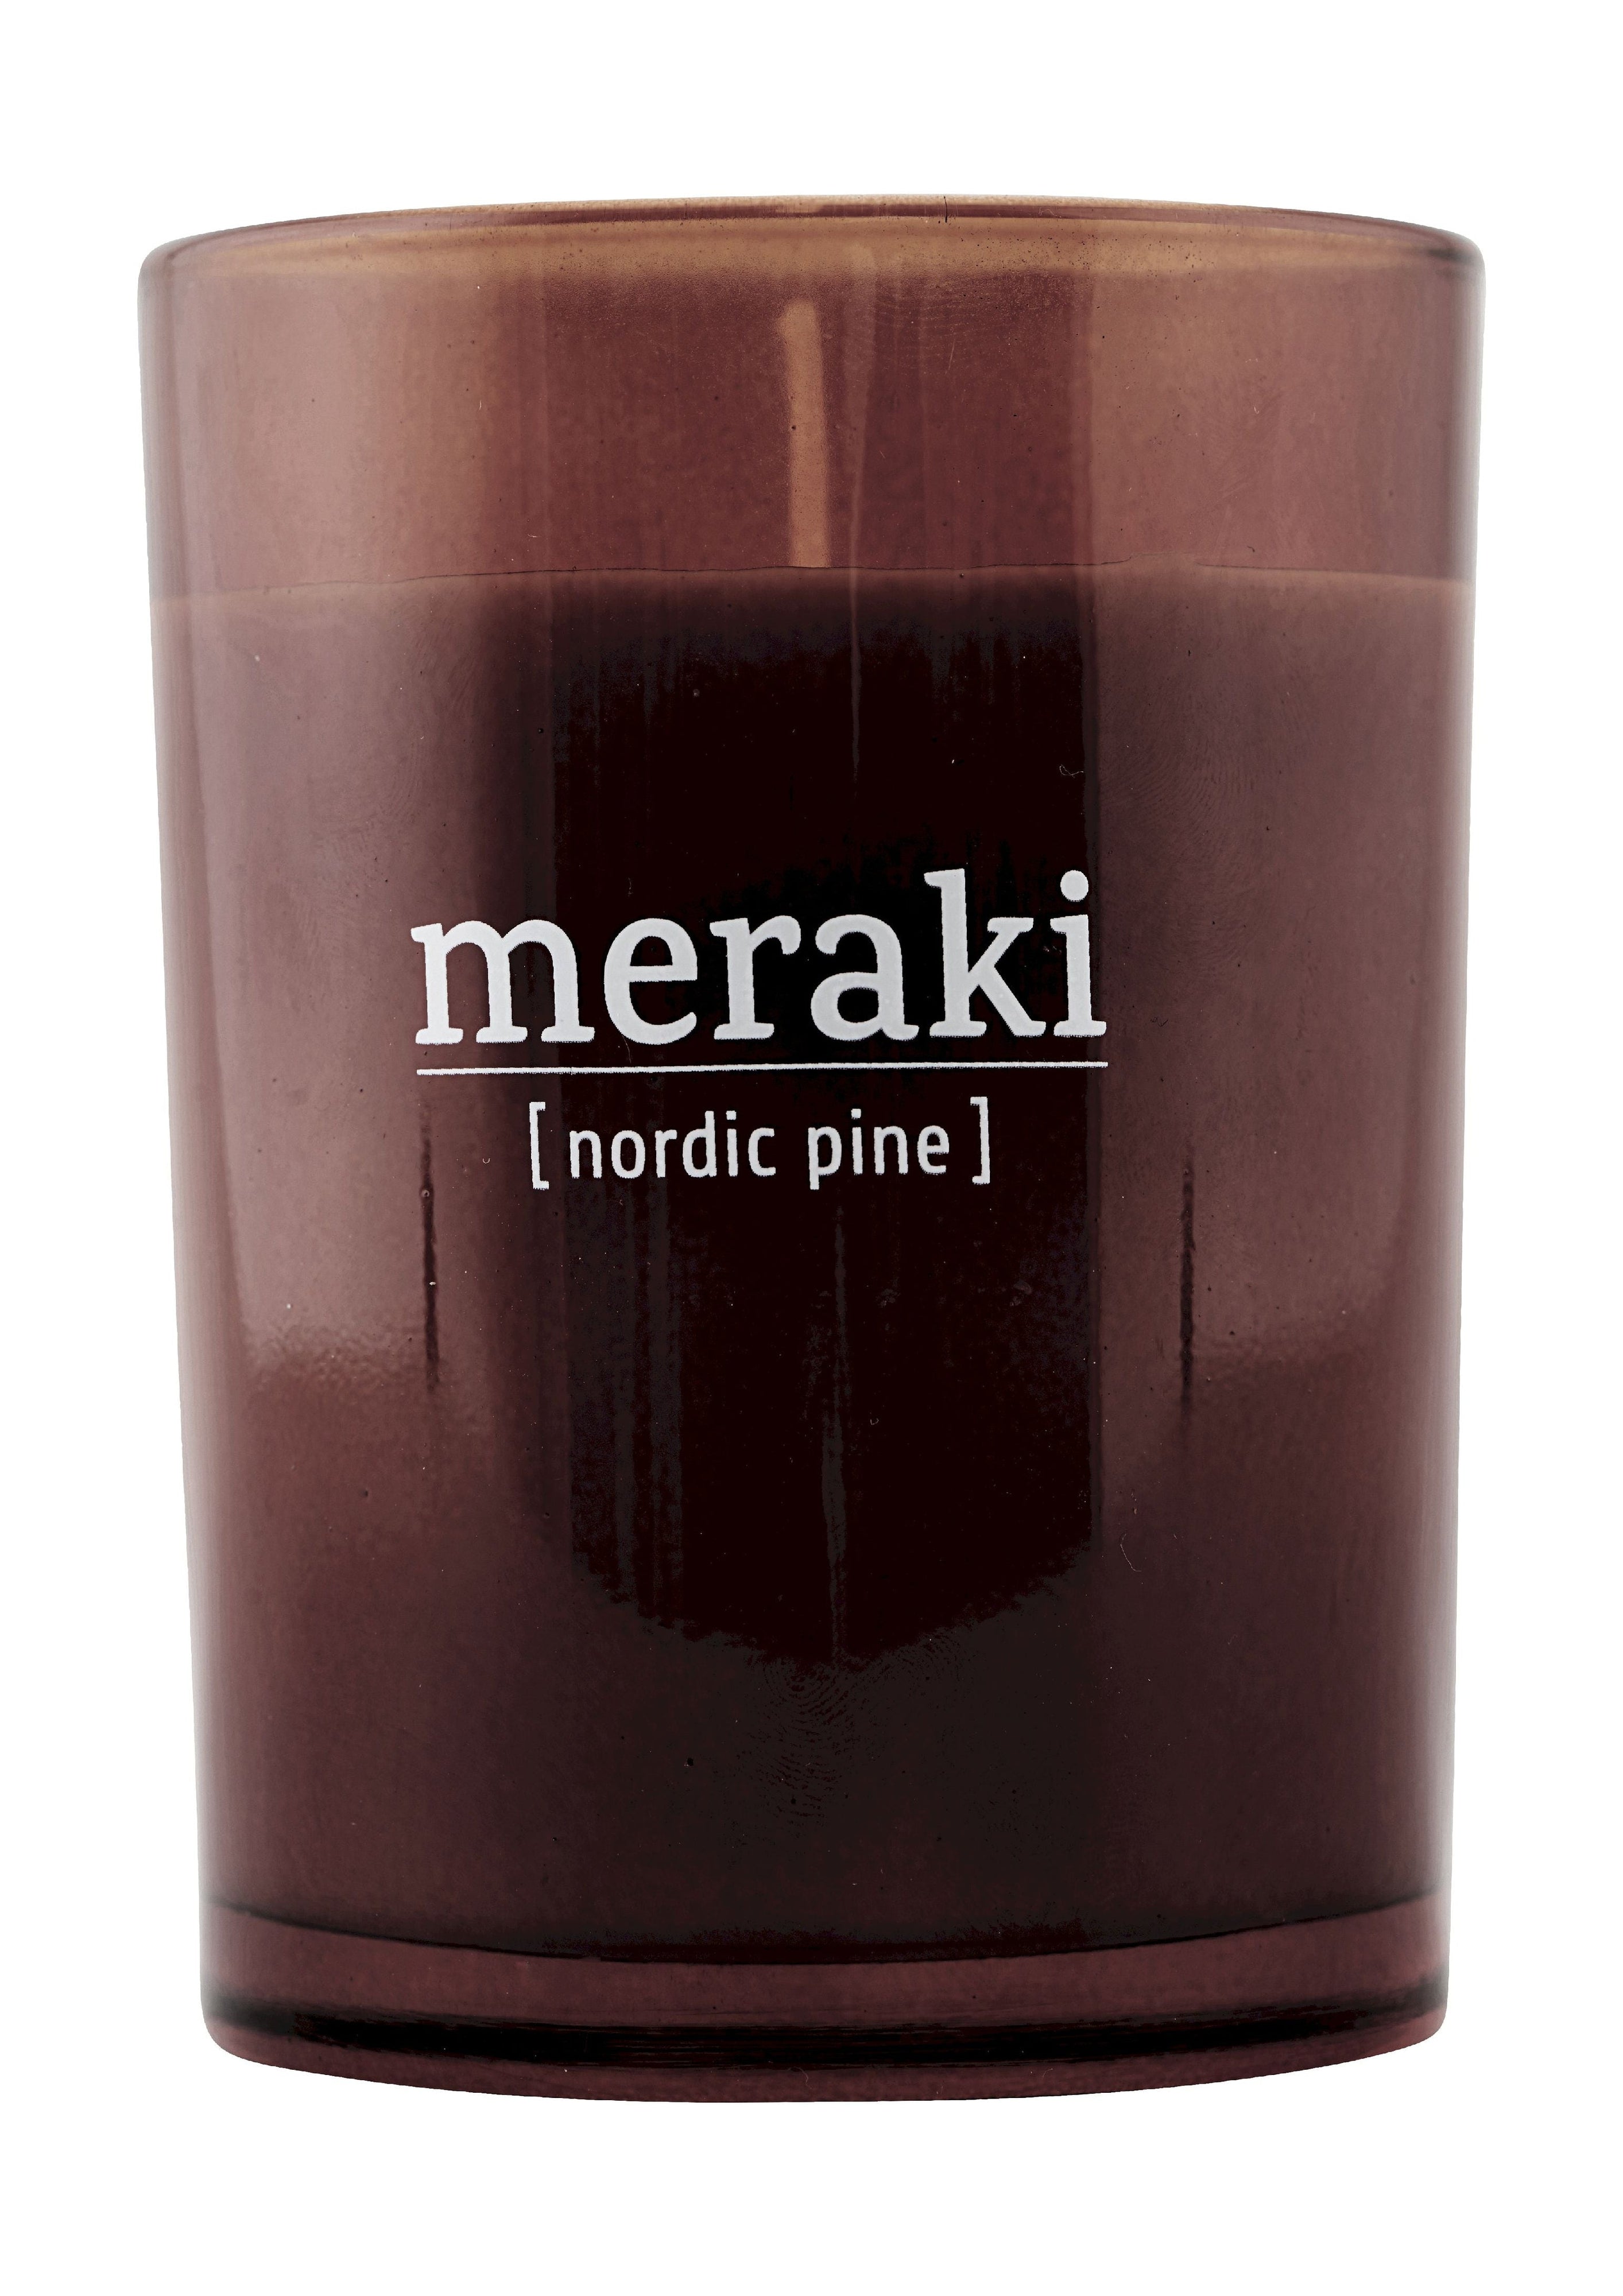 Vela perfumada de Meraki H10,5 cm, pino nórdico